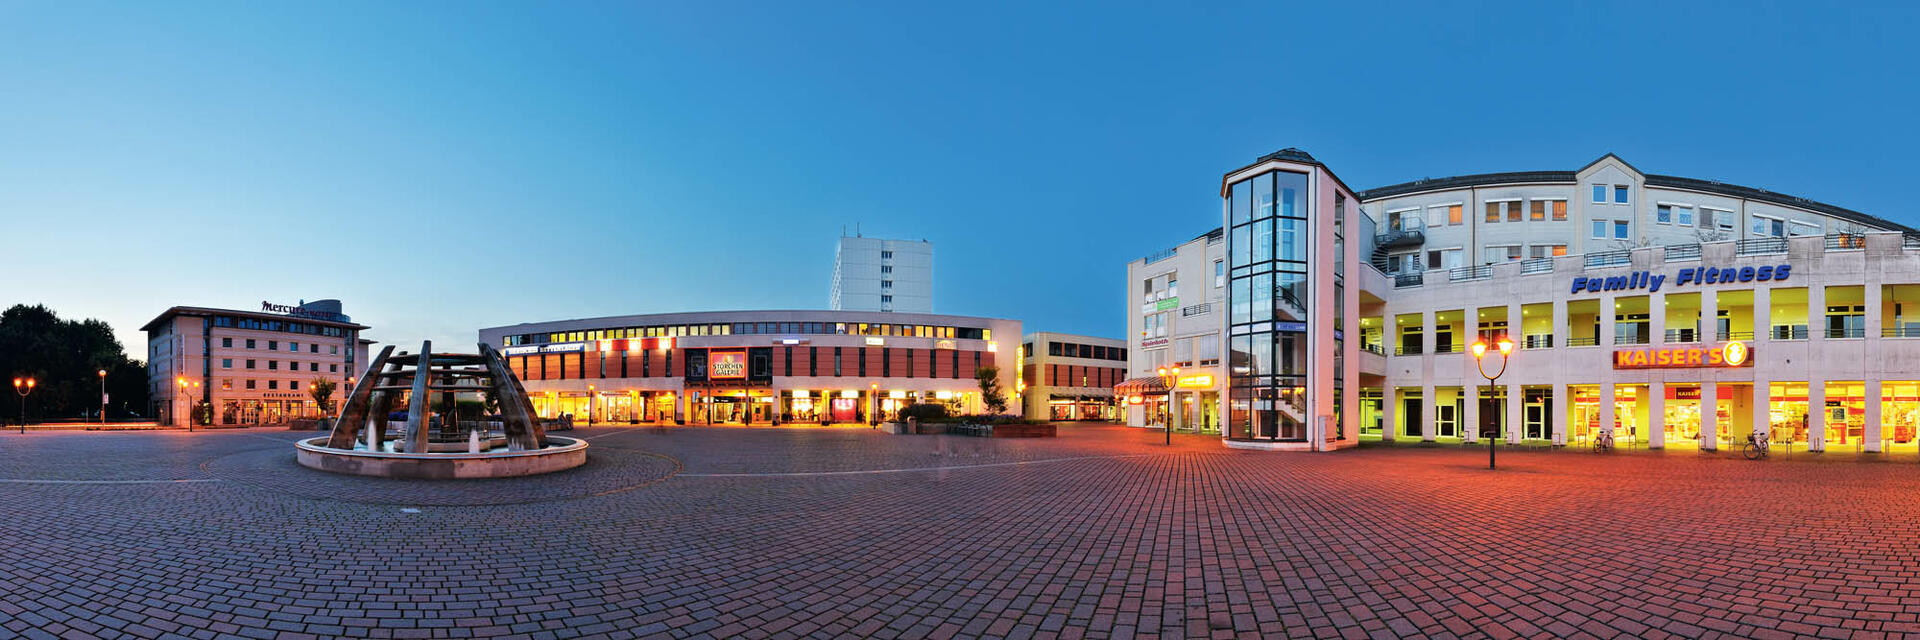 Bild vergrößern: Havelplatz mit Blick auf die Storchengalerie in Hennigsdorf